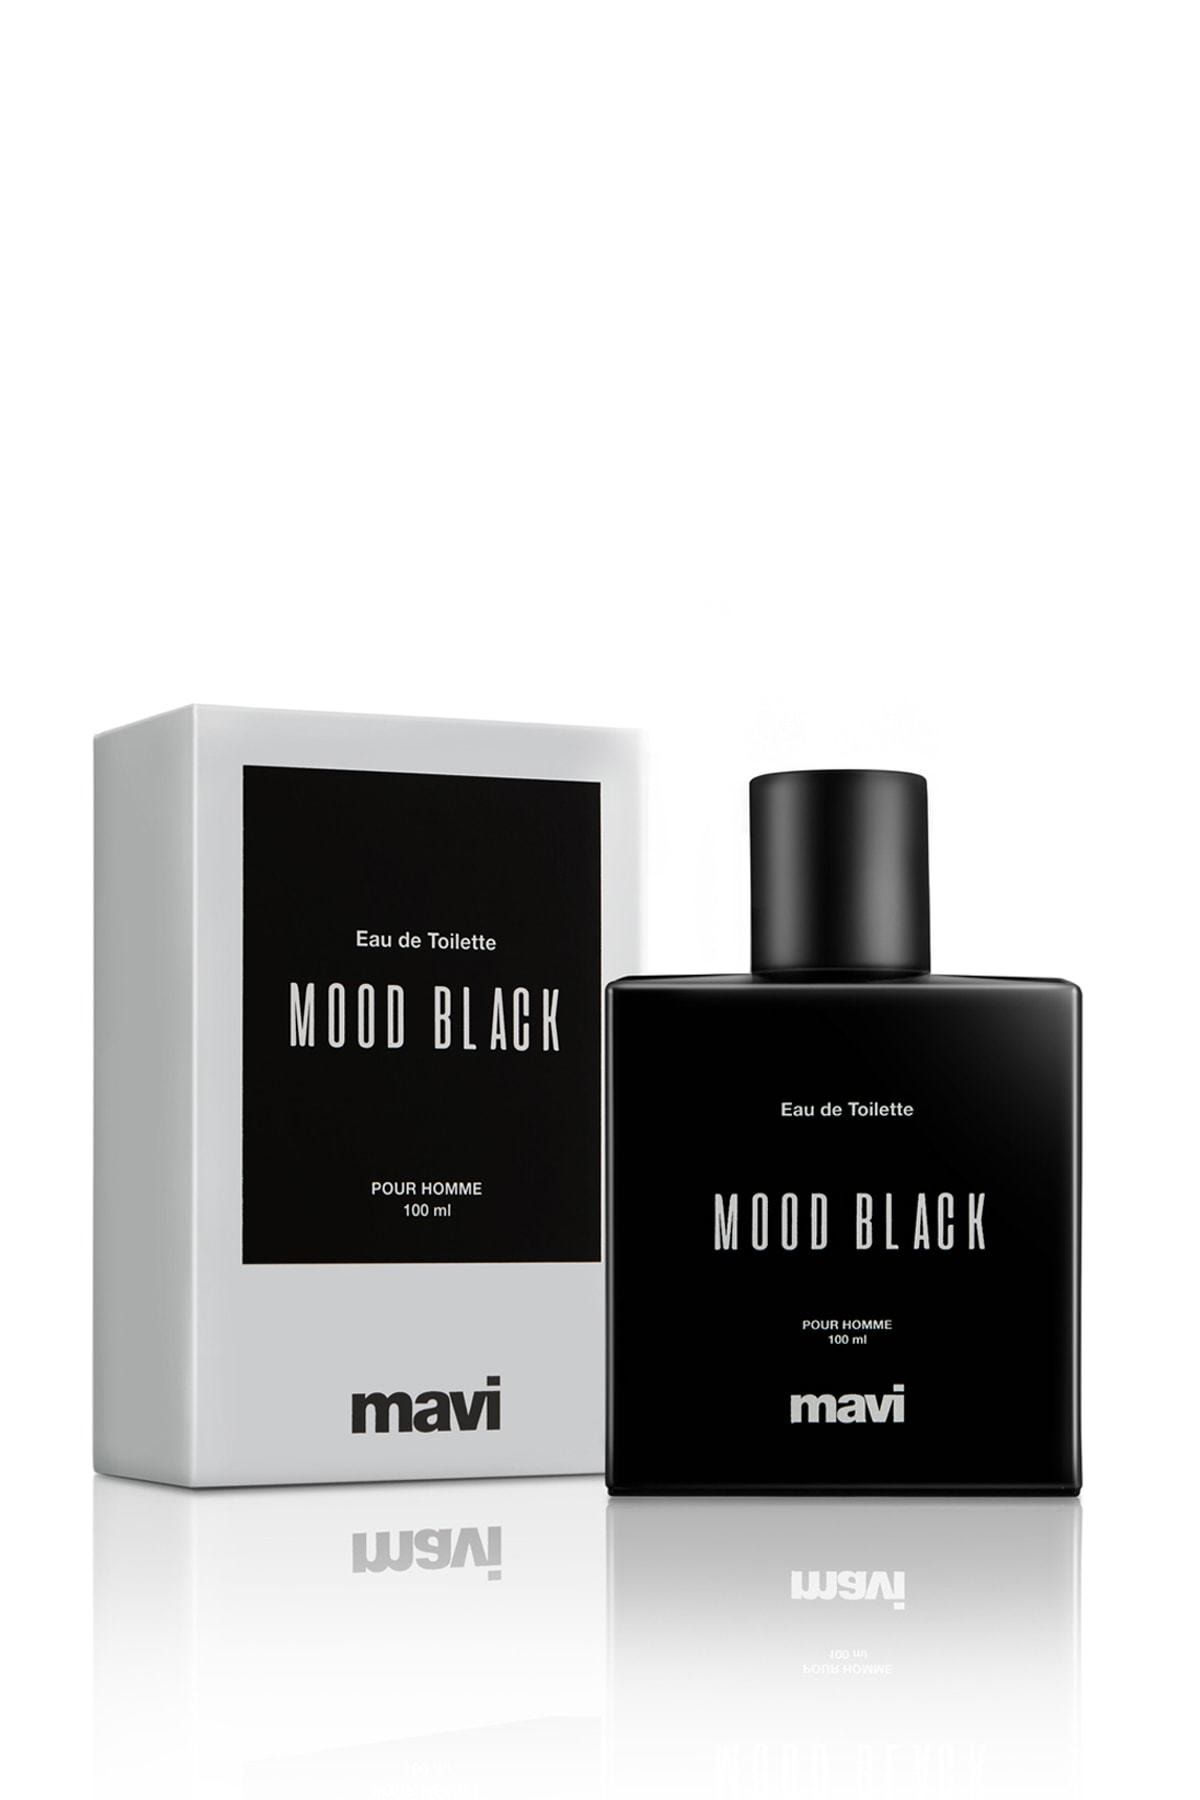 عطر مردانه مود بلک Mood Black ماوی Mavi